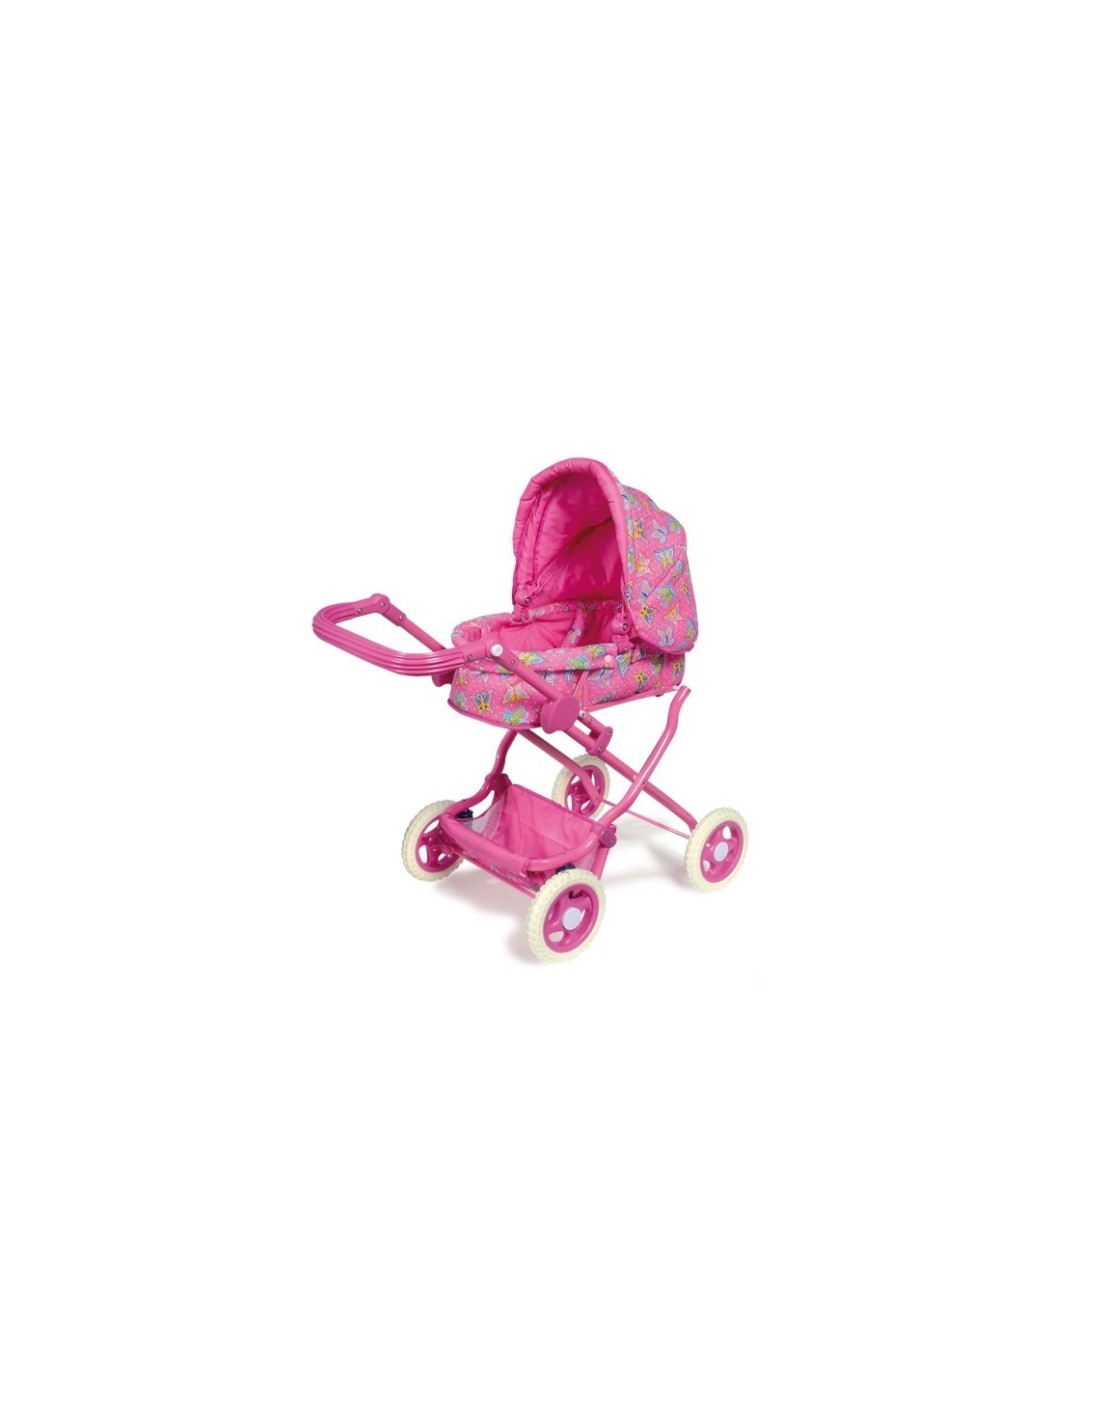 Cotxet de nines de color rosa plegable amb bossa i cistella carretó joguina de nina.